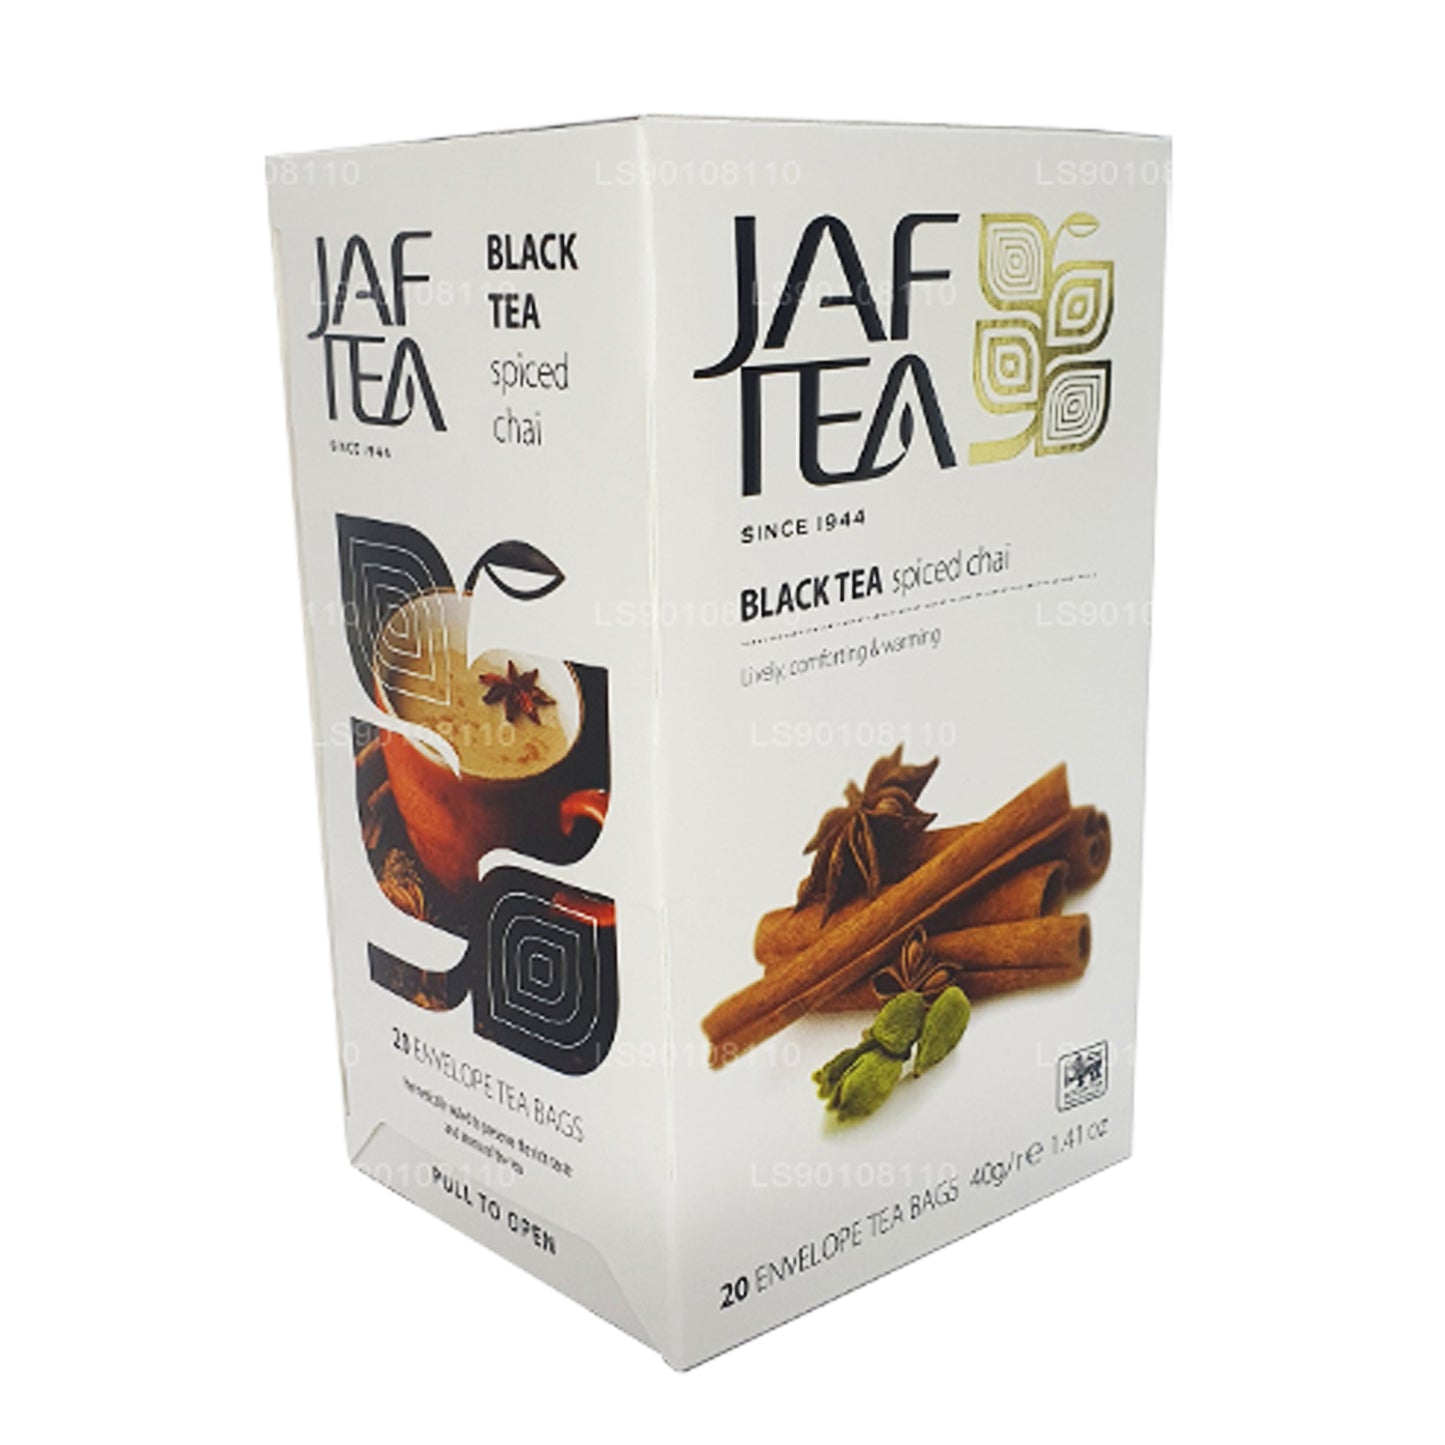 Jaf Tea Pure Spice Collection Chai speziato al tè nero (40 g) 20 bustine di tè